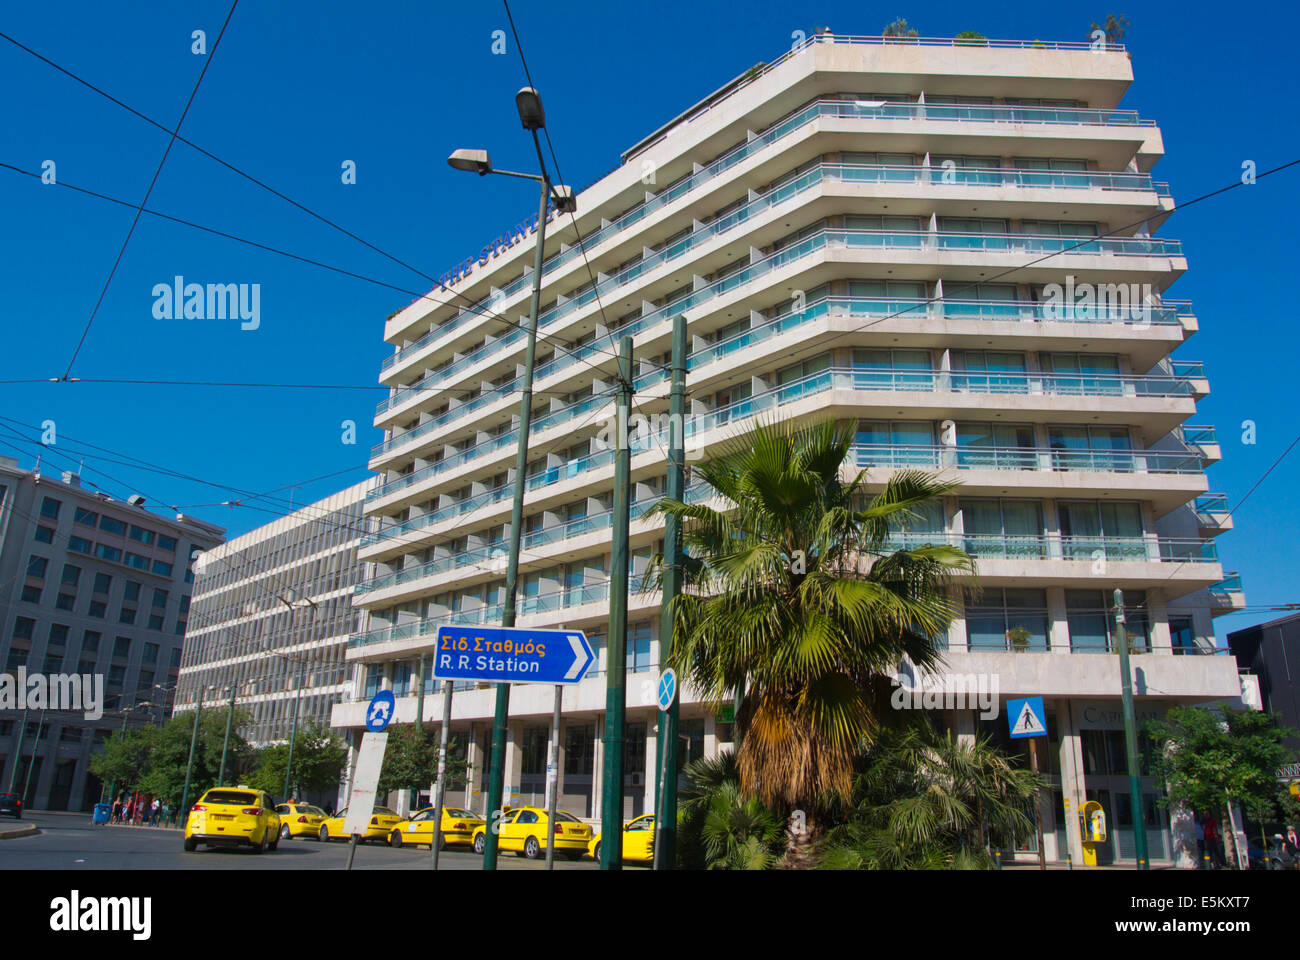 Plateia Karalskaki square, Omonia district, central Athens, Greece, Europe Stock Photo